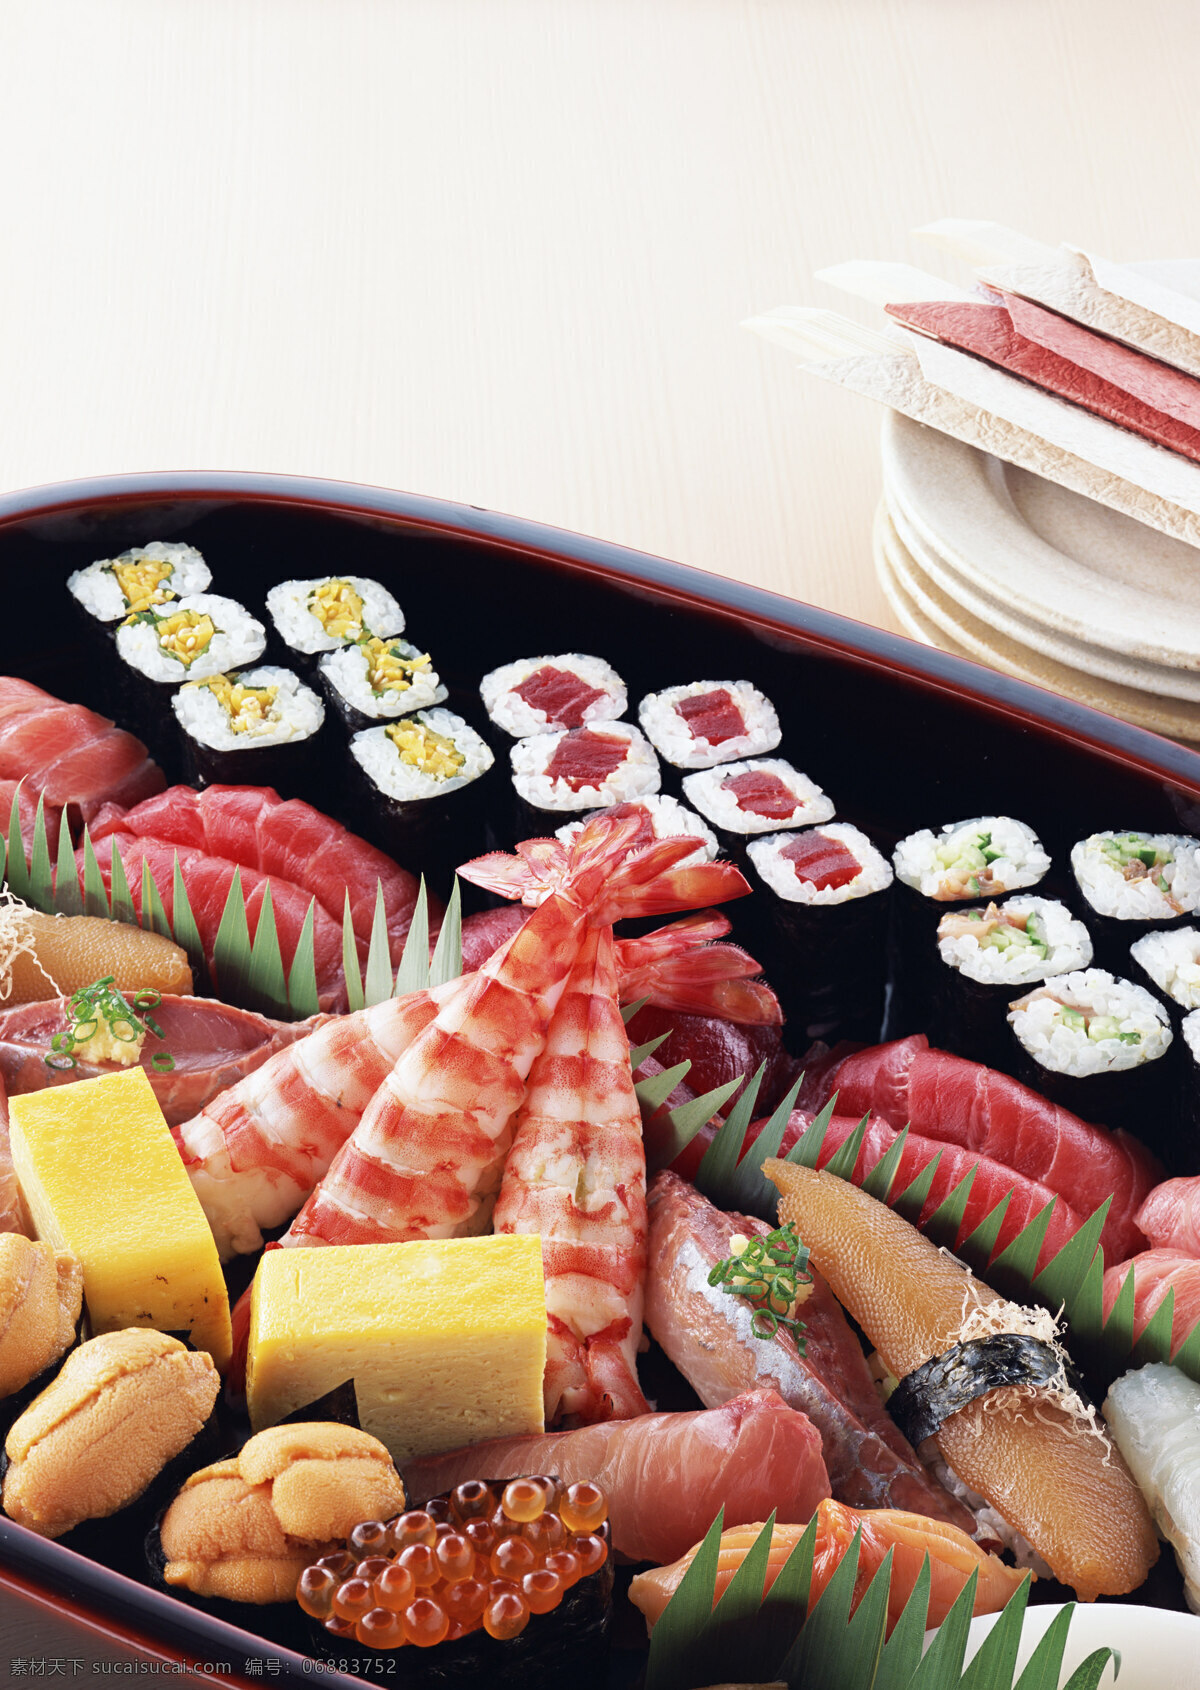 美食免费下载 美食 日本料理 三文鱼 寿司 虾 大餐 鱼子 风景 生活 旅游餐饮